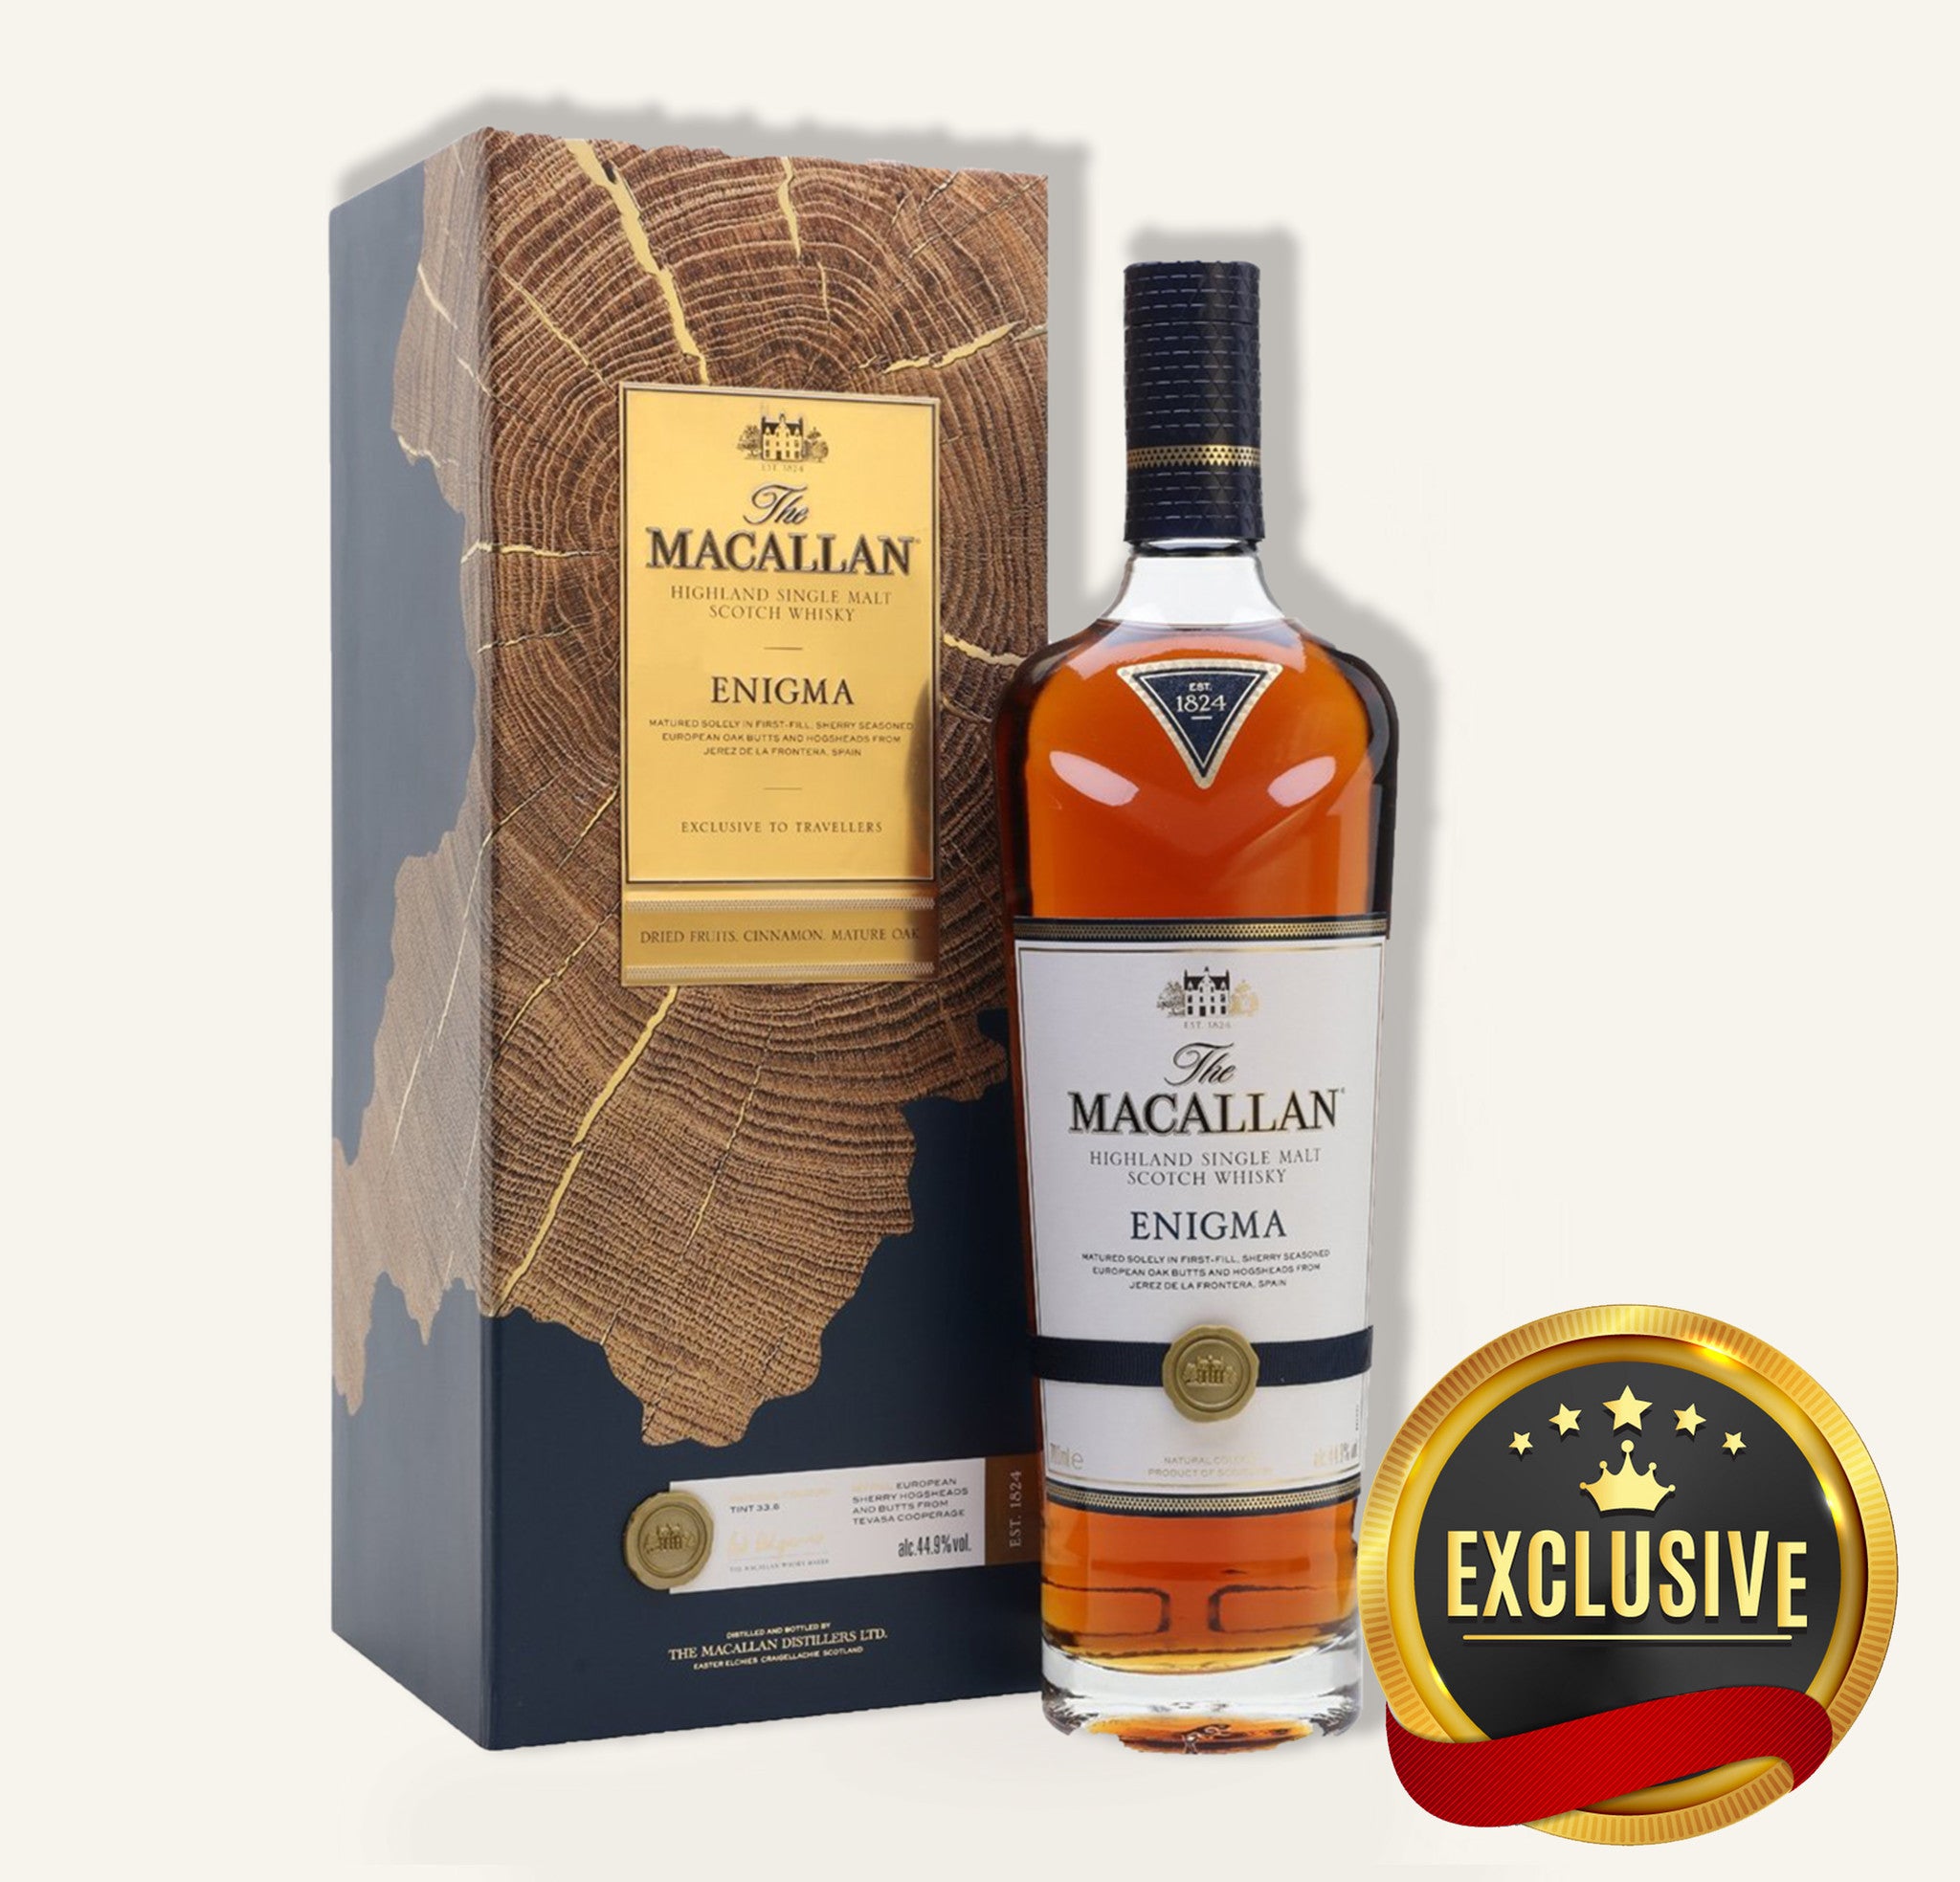 Single Malt and Scotch Whisky: Buy Single Malt and Scotch Whisky